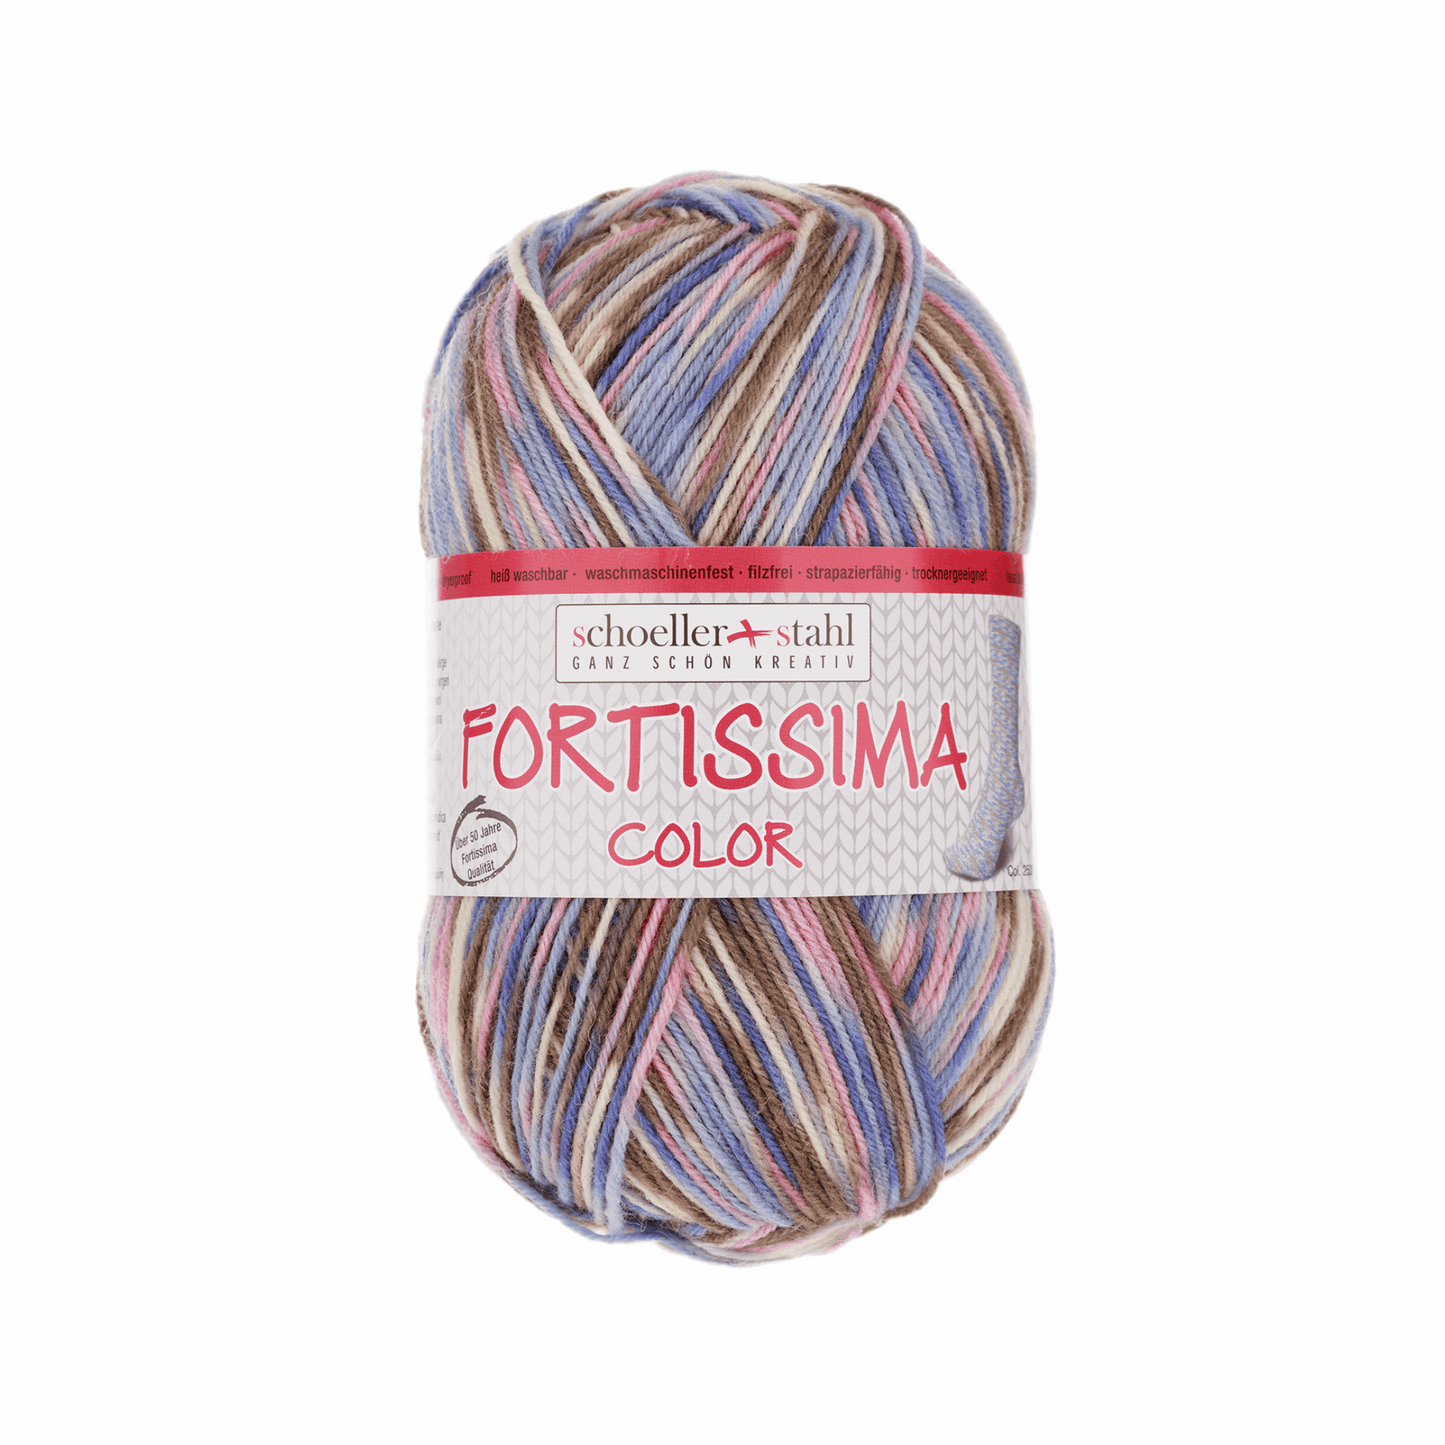 Fortissima socka 4fädrig color, 90028, Farbe 2500, raureif